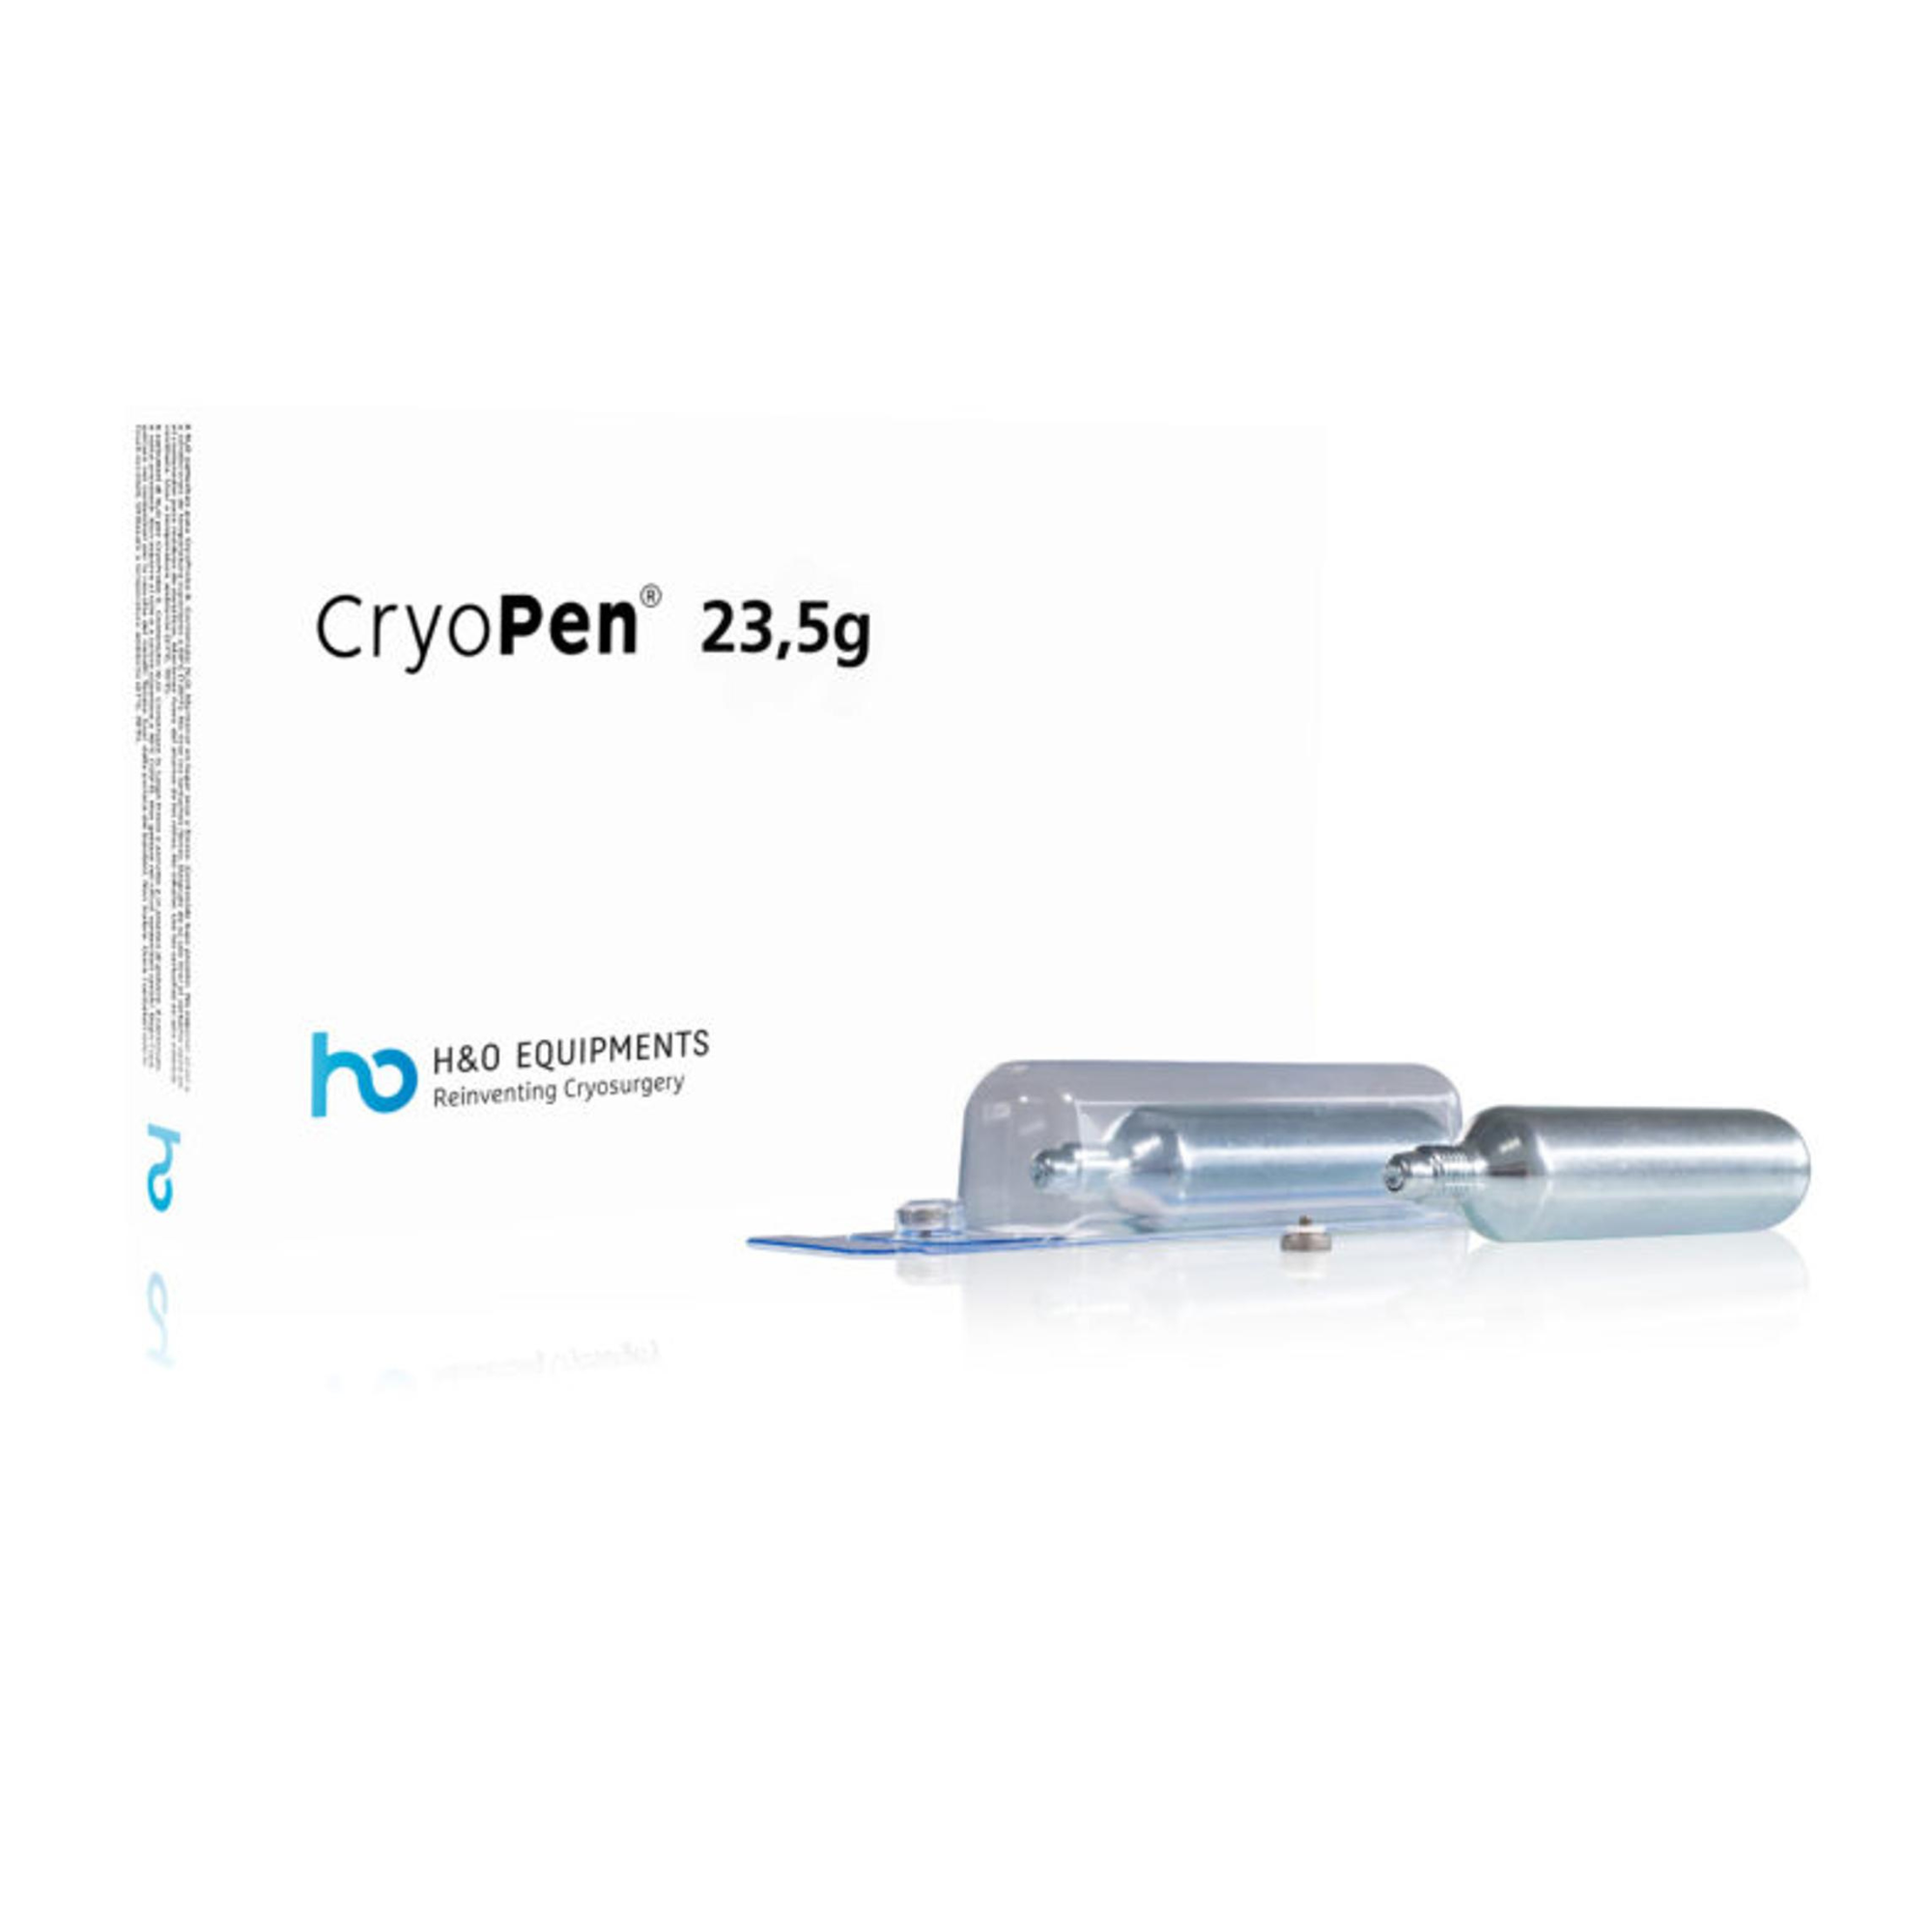 Cartouches pour CryoPen - Traitement des verrues